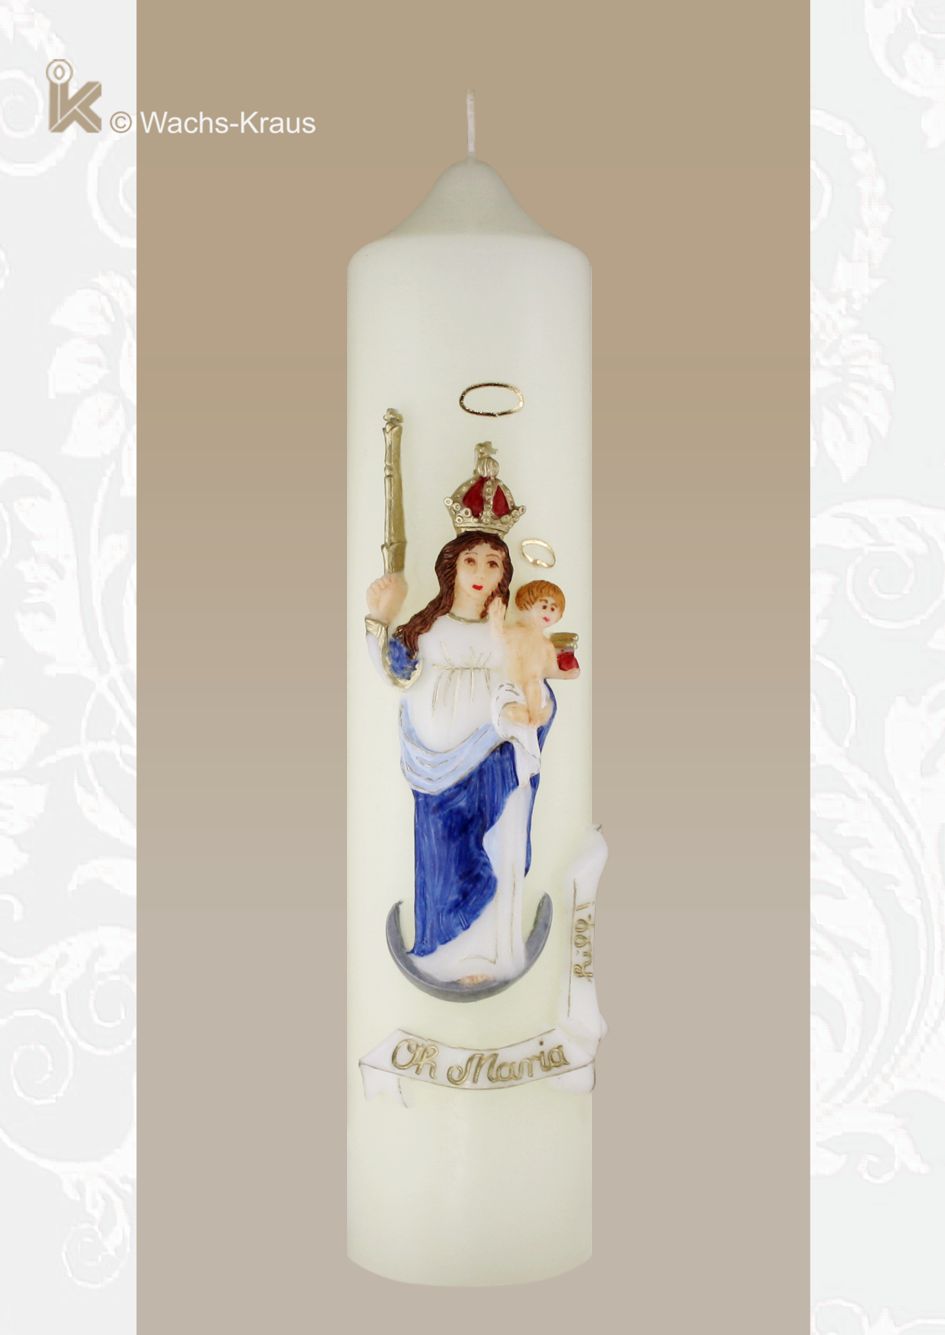 Marienkerze: oh Maria hilf. Eine schöne, aus Wachs gegossene und in Handarbeit bemalte Madonna mit Kind und zusätzlich ein Schriftband: Oh Maria hilf